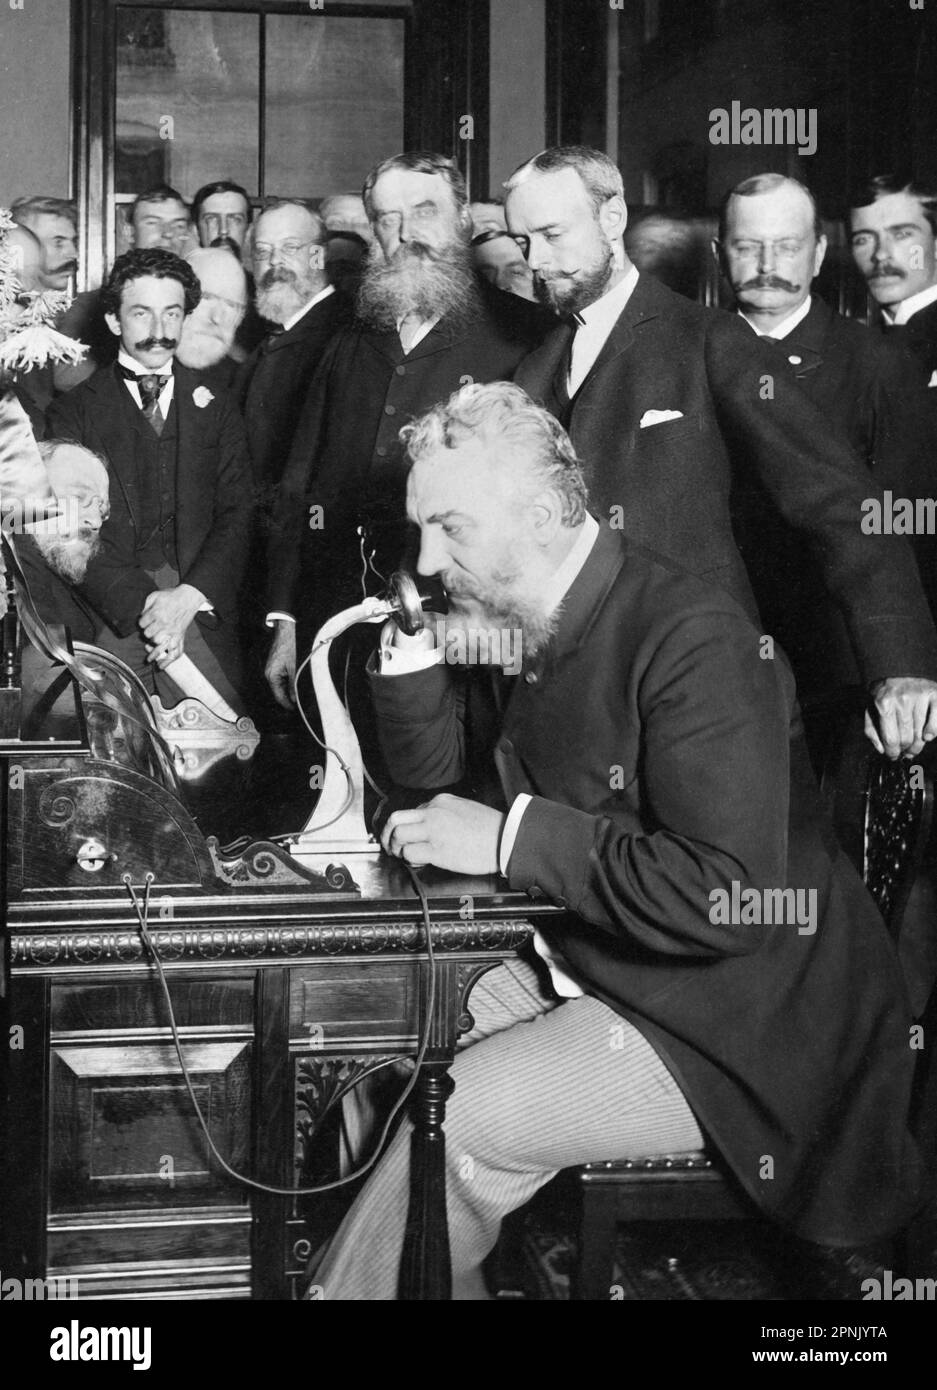 Alexander Graham Bell téléphone. Photographie de l'inventeur écossais du premier téléphone pratique, Alexander Graham Bell (1847-1922), à l'ouverture de la ligne téléphonique de New York et de Chicago en octobre 1892. Photo de E J Holmes. Banque D'Images